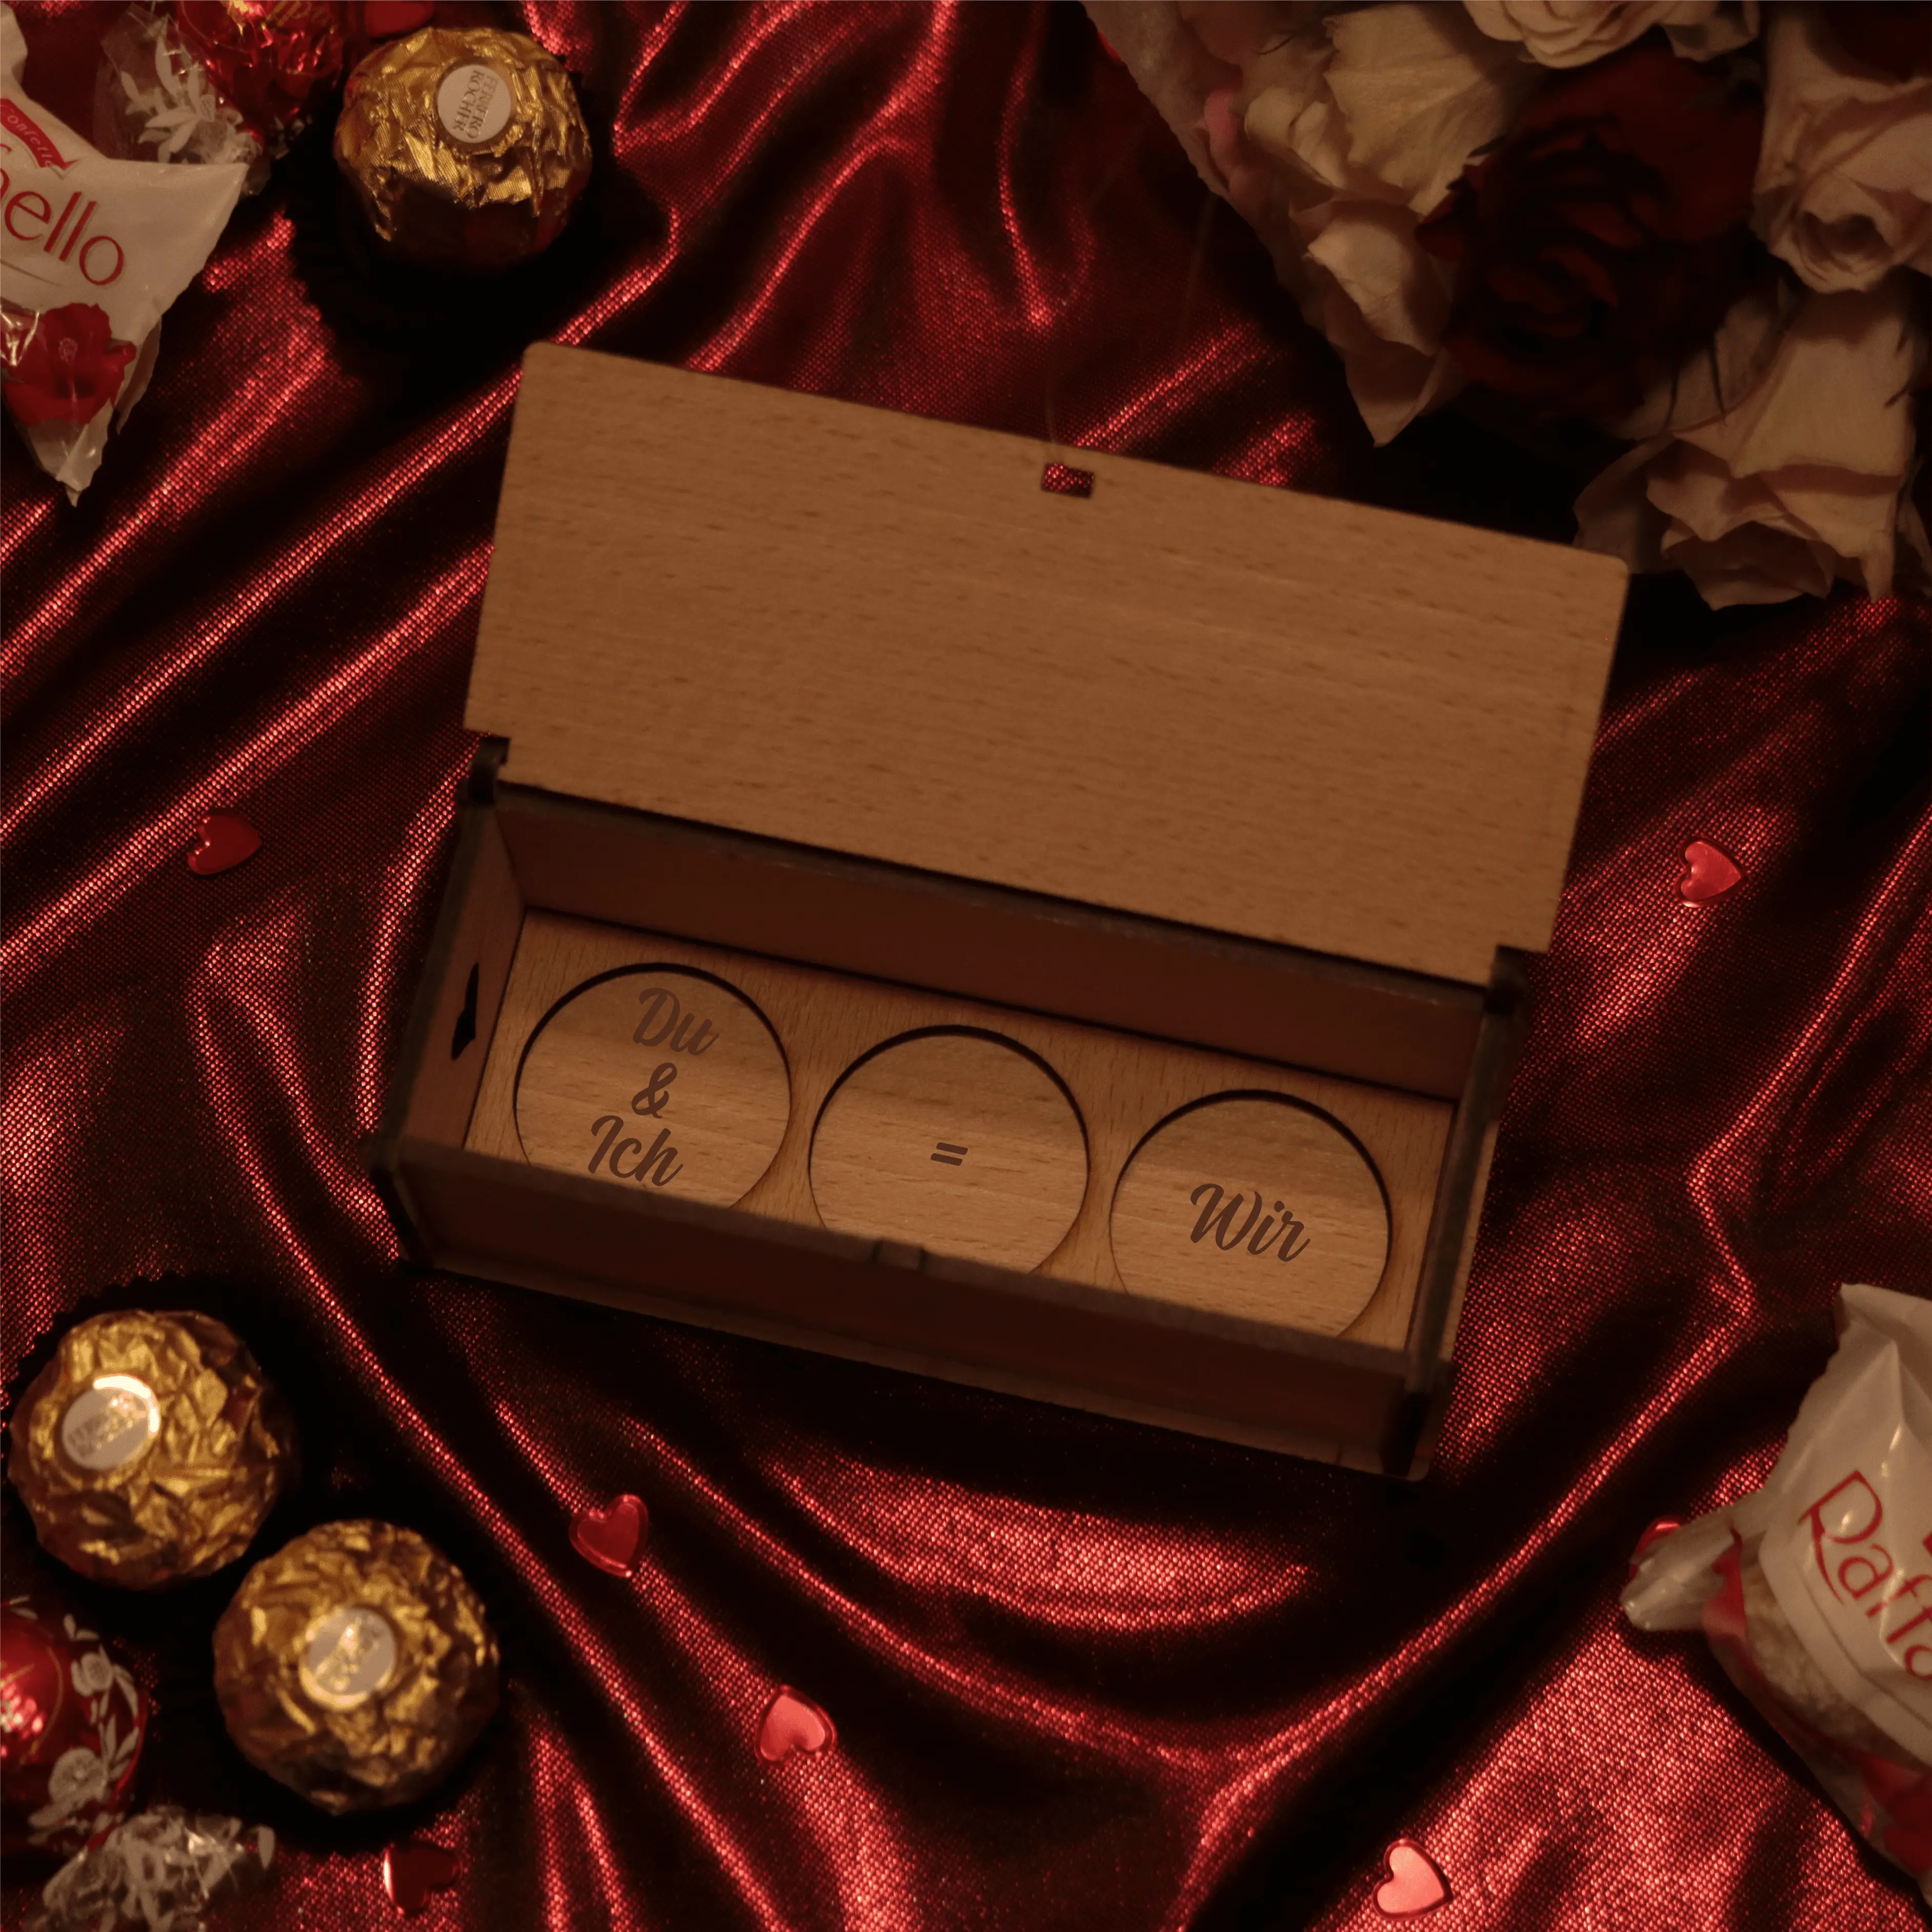 Du + Ich = Wir | Holzbox mit Ferrero Rocher